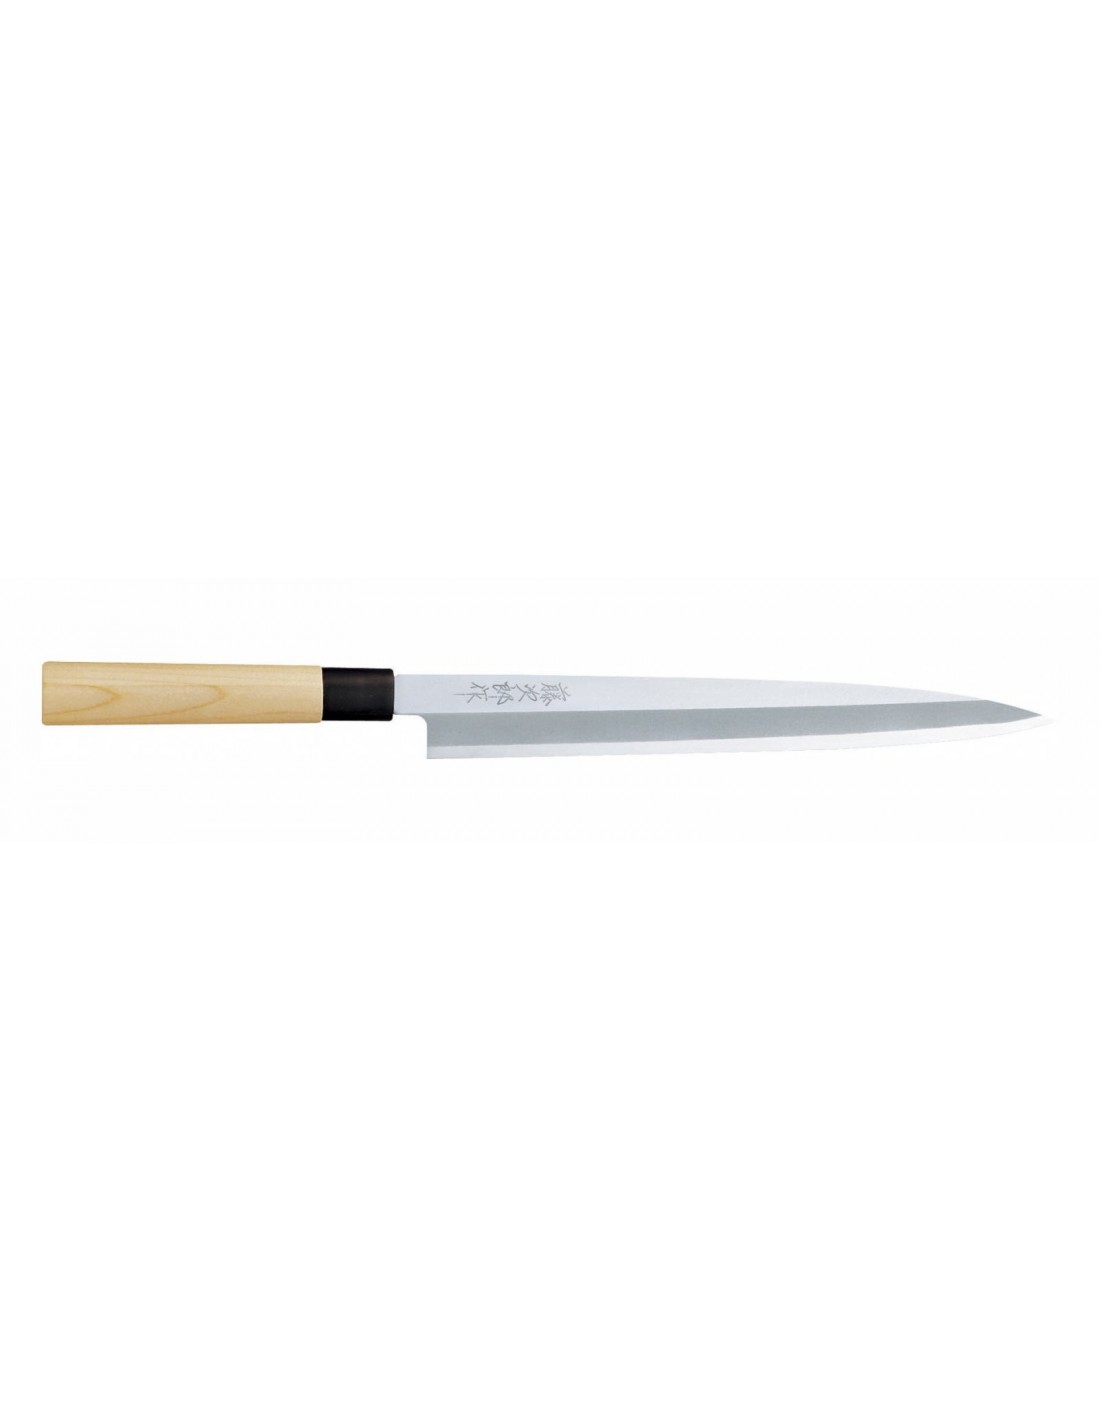 Cuchillo para chef Global G-17, el cuchillo de cocinero 270 mm